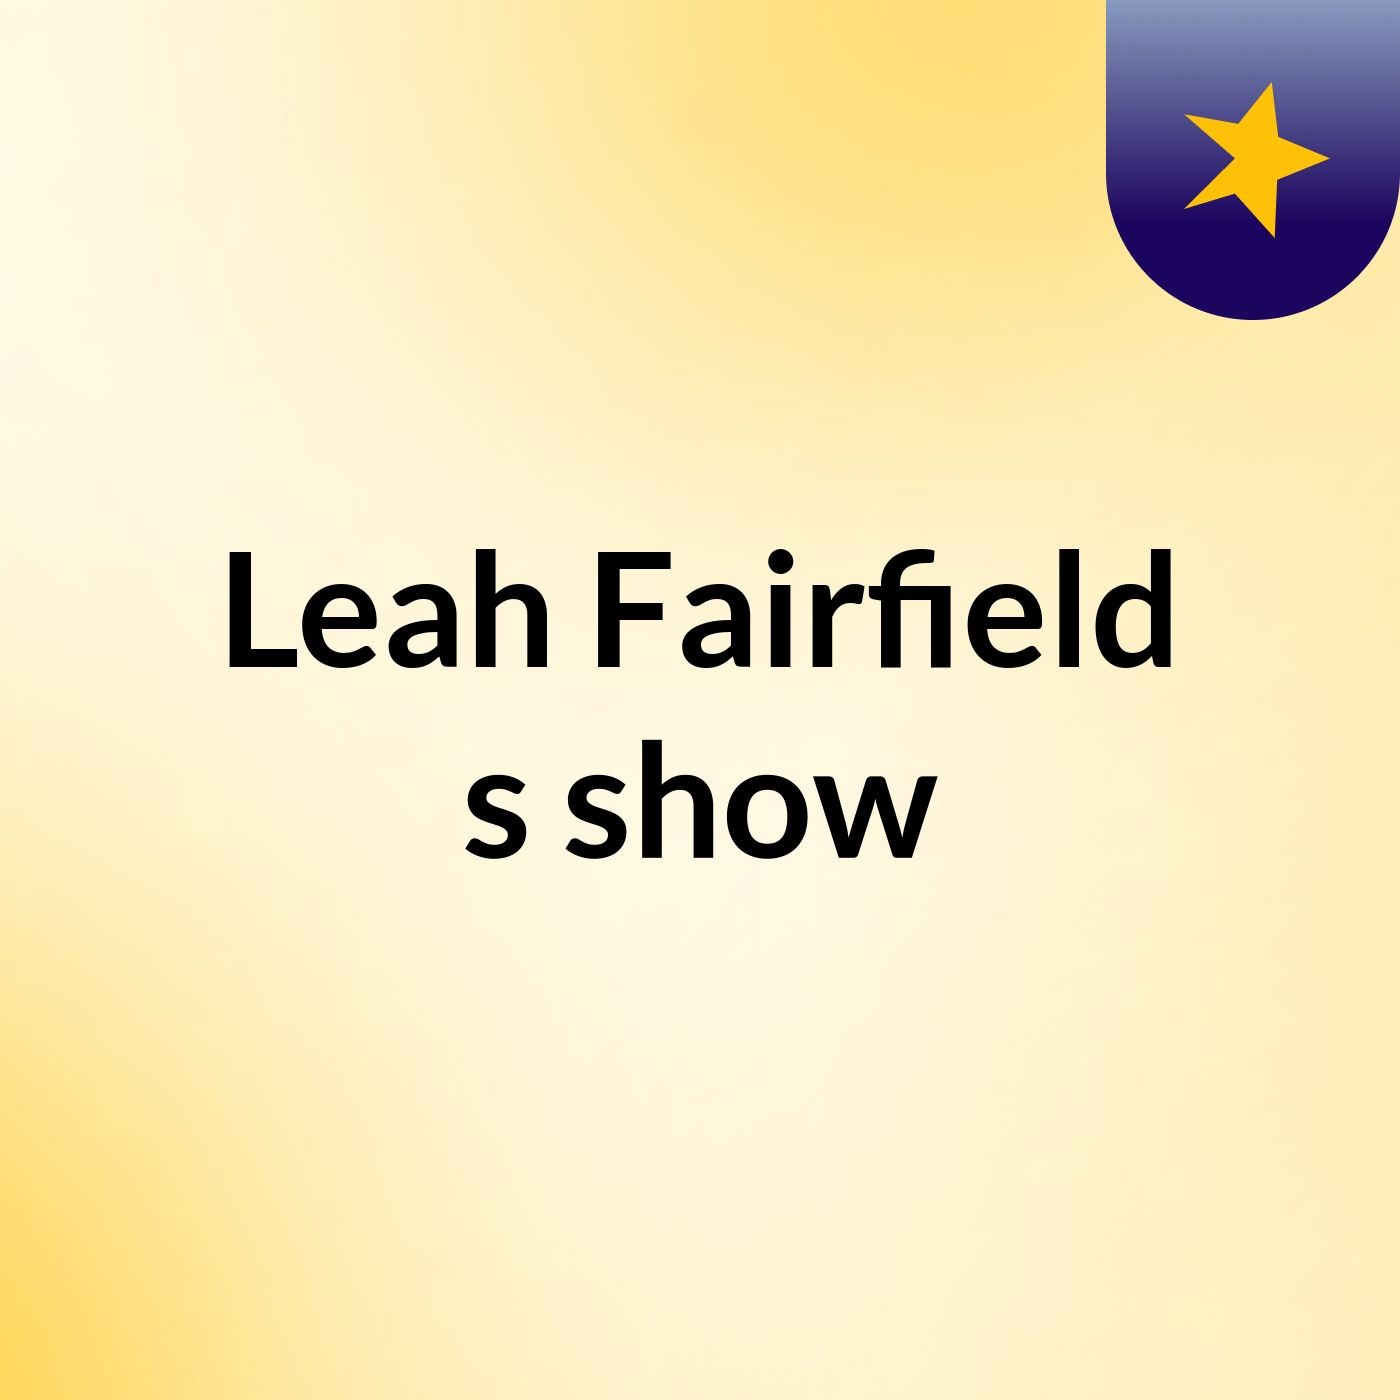 Leah Fairfield's show